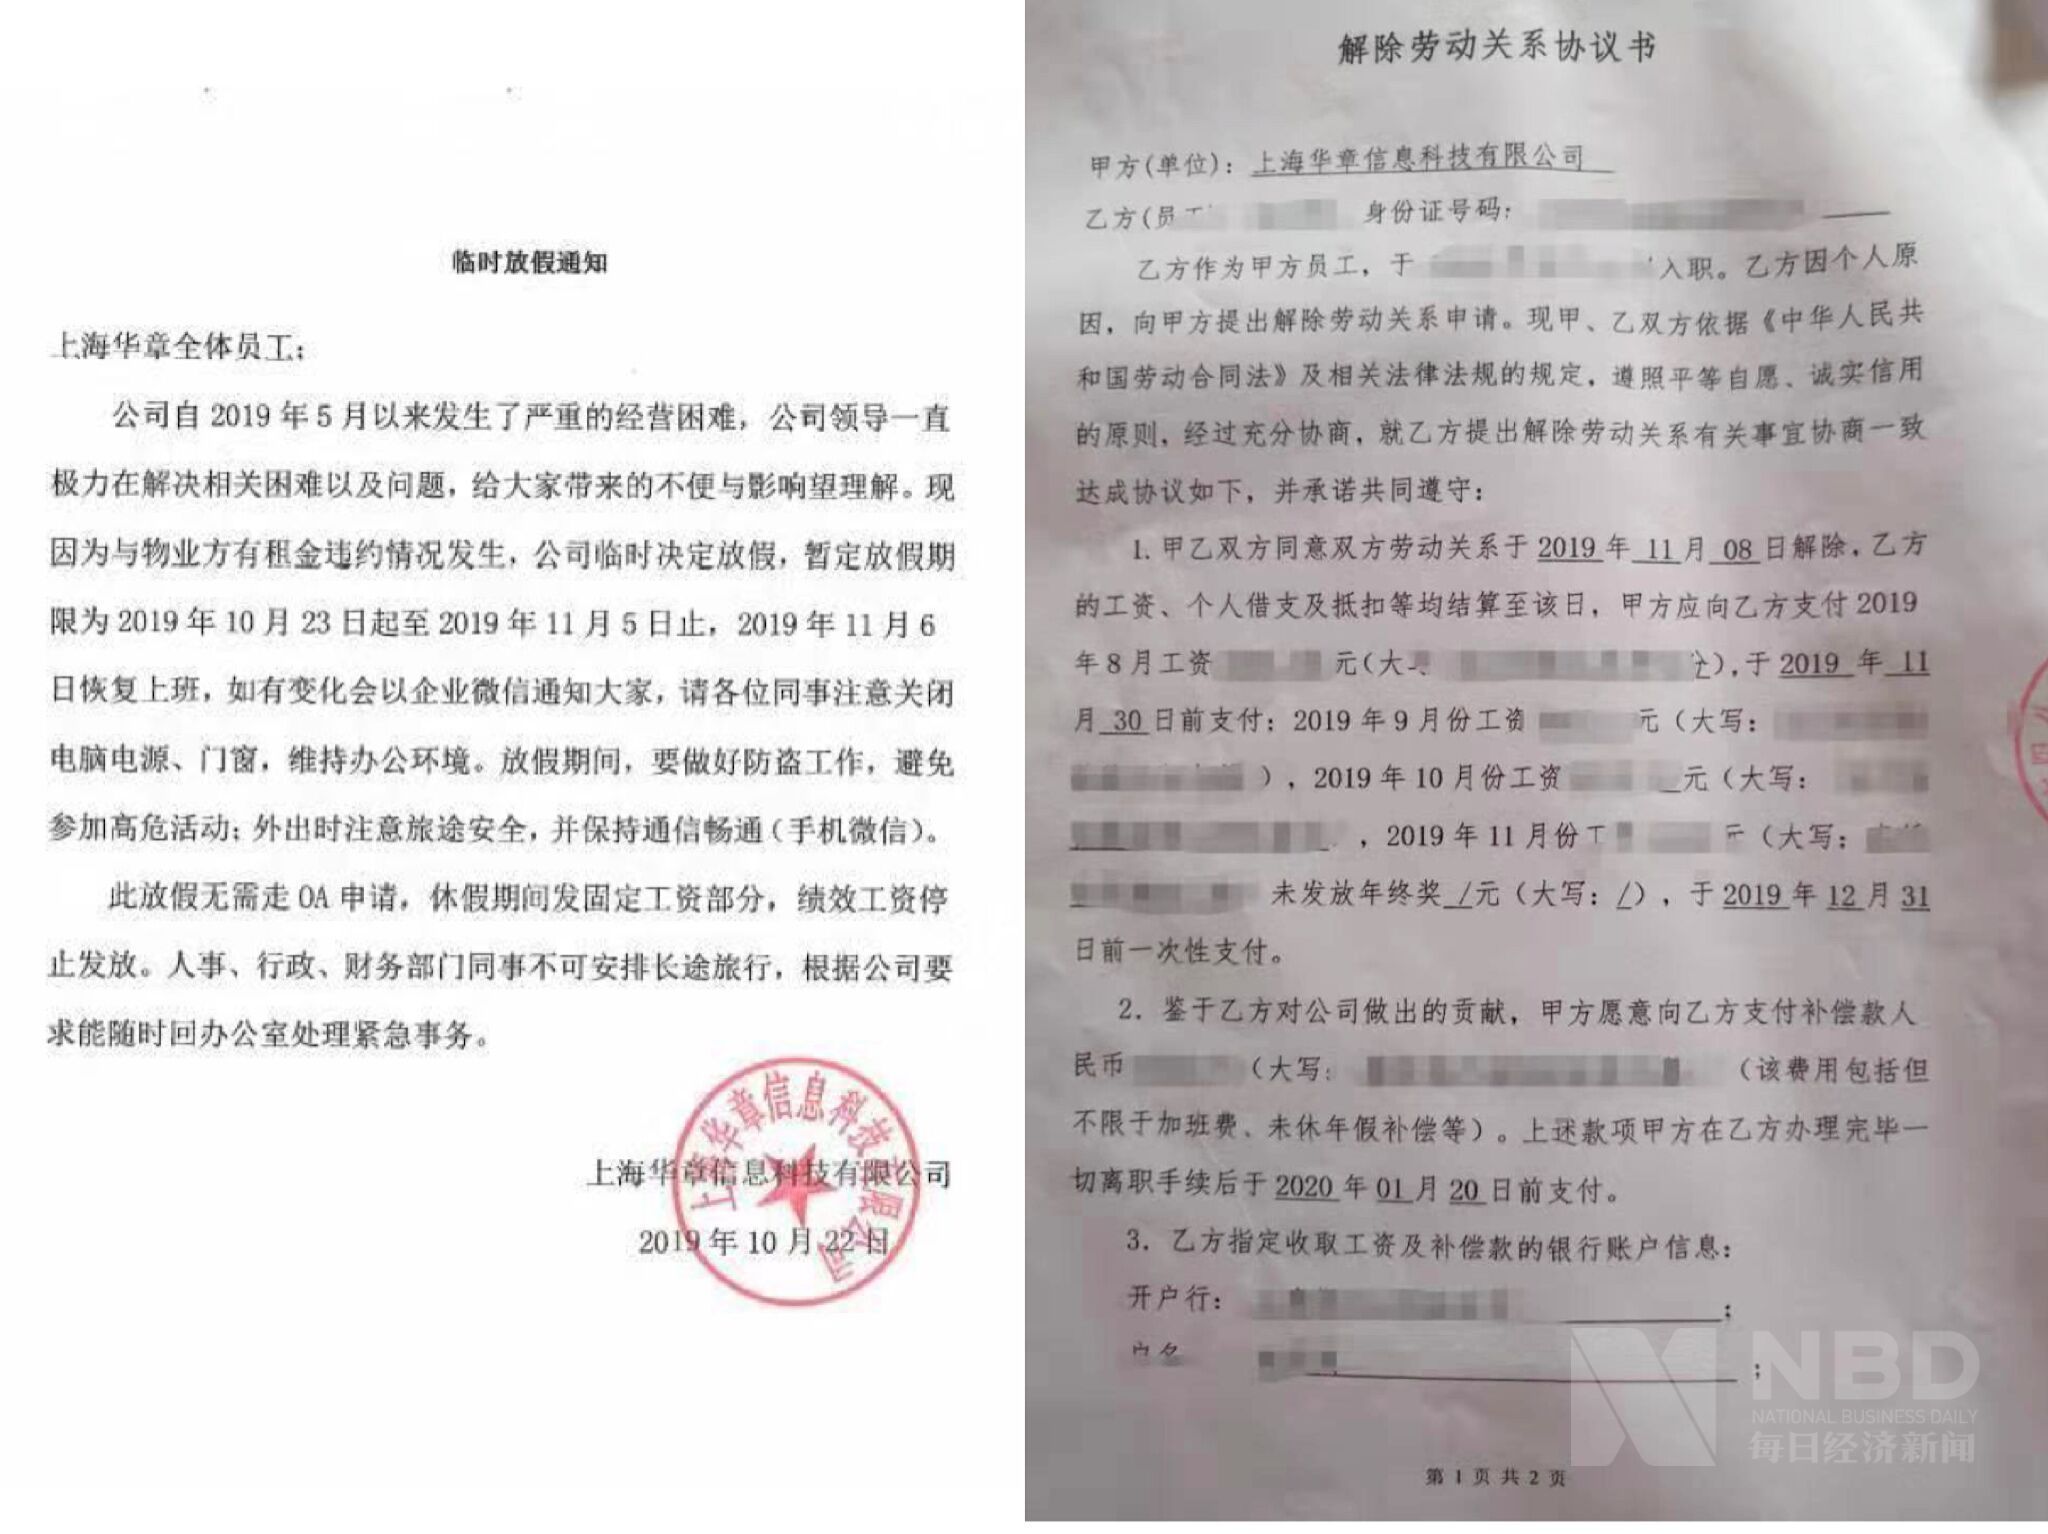 左图为10月22日上海华章的《临时放假通知》 ，右图为上海华章与员工签订的《解除劳动关系协议》